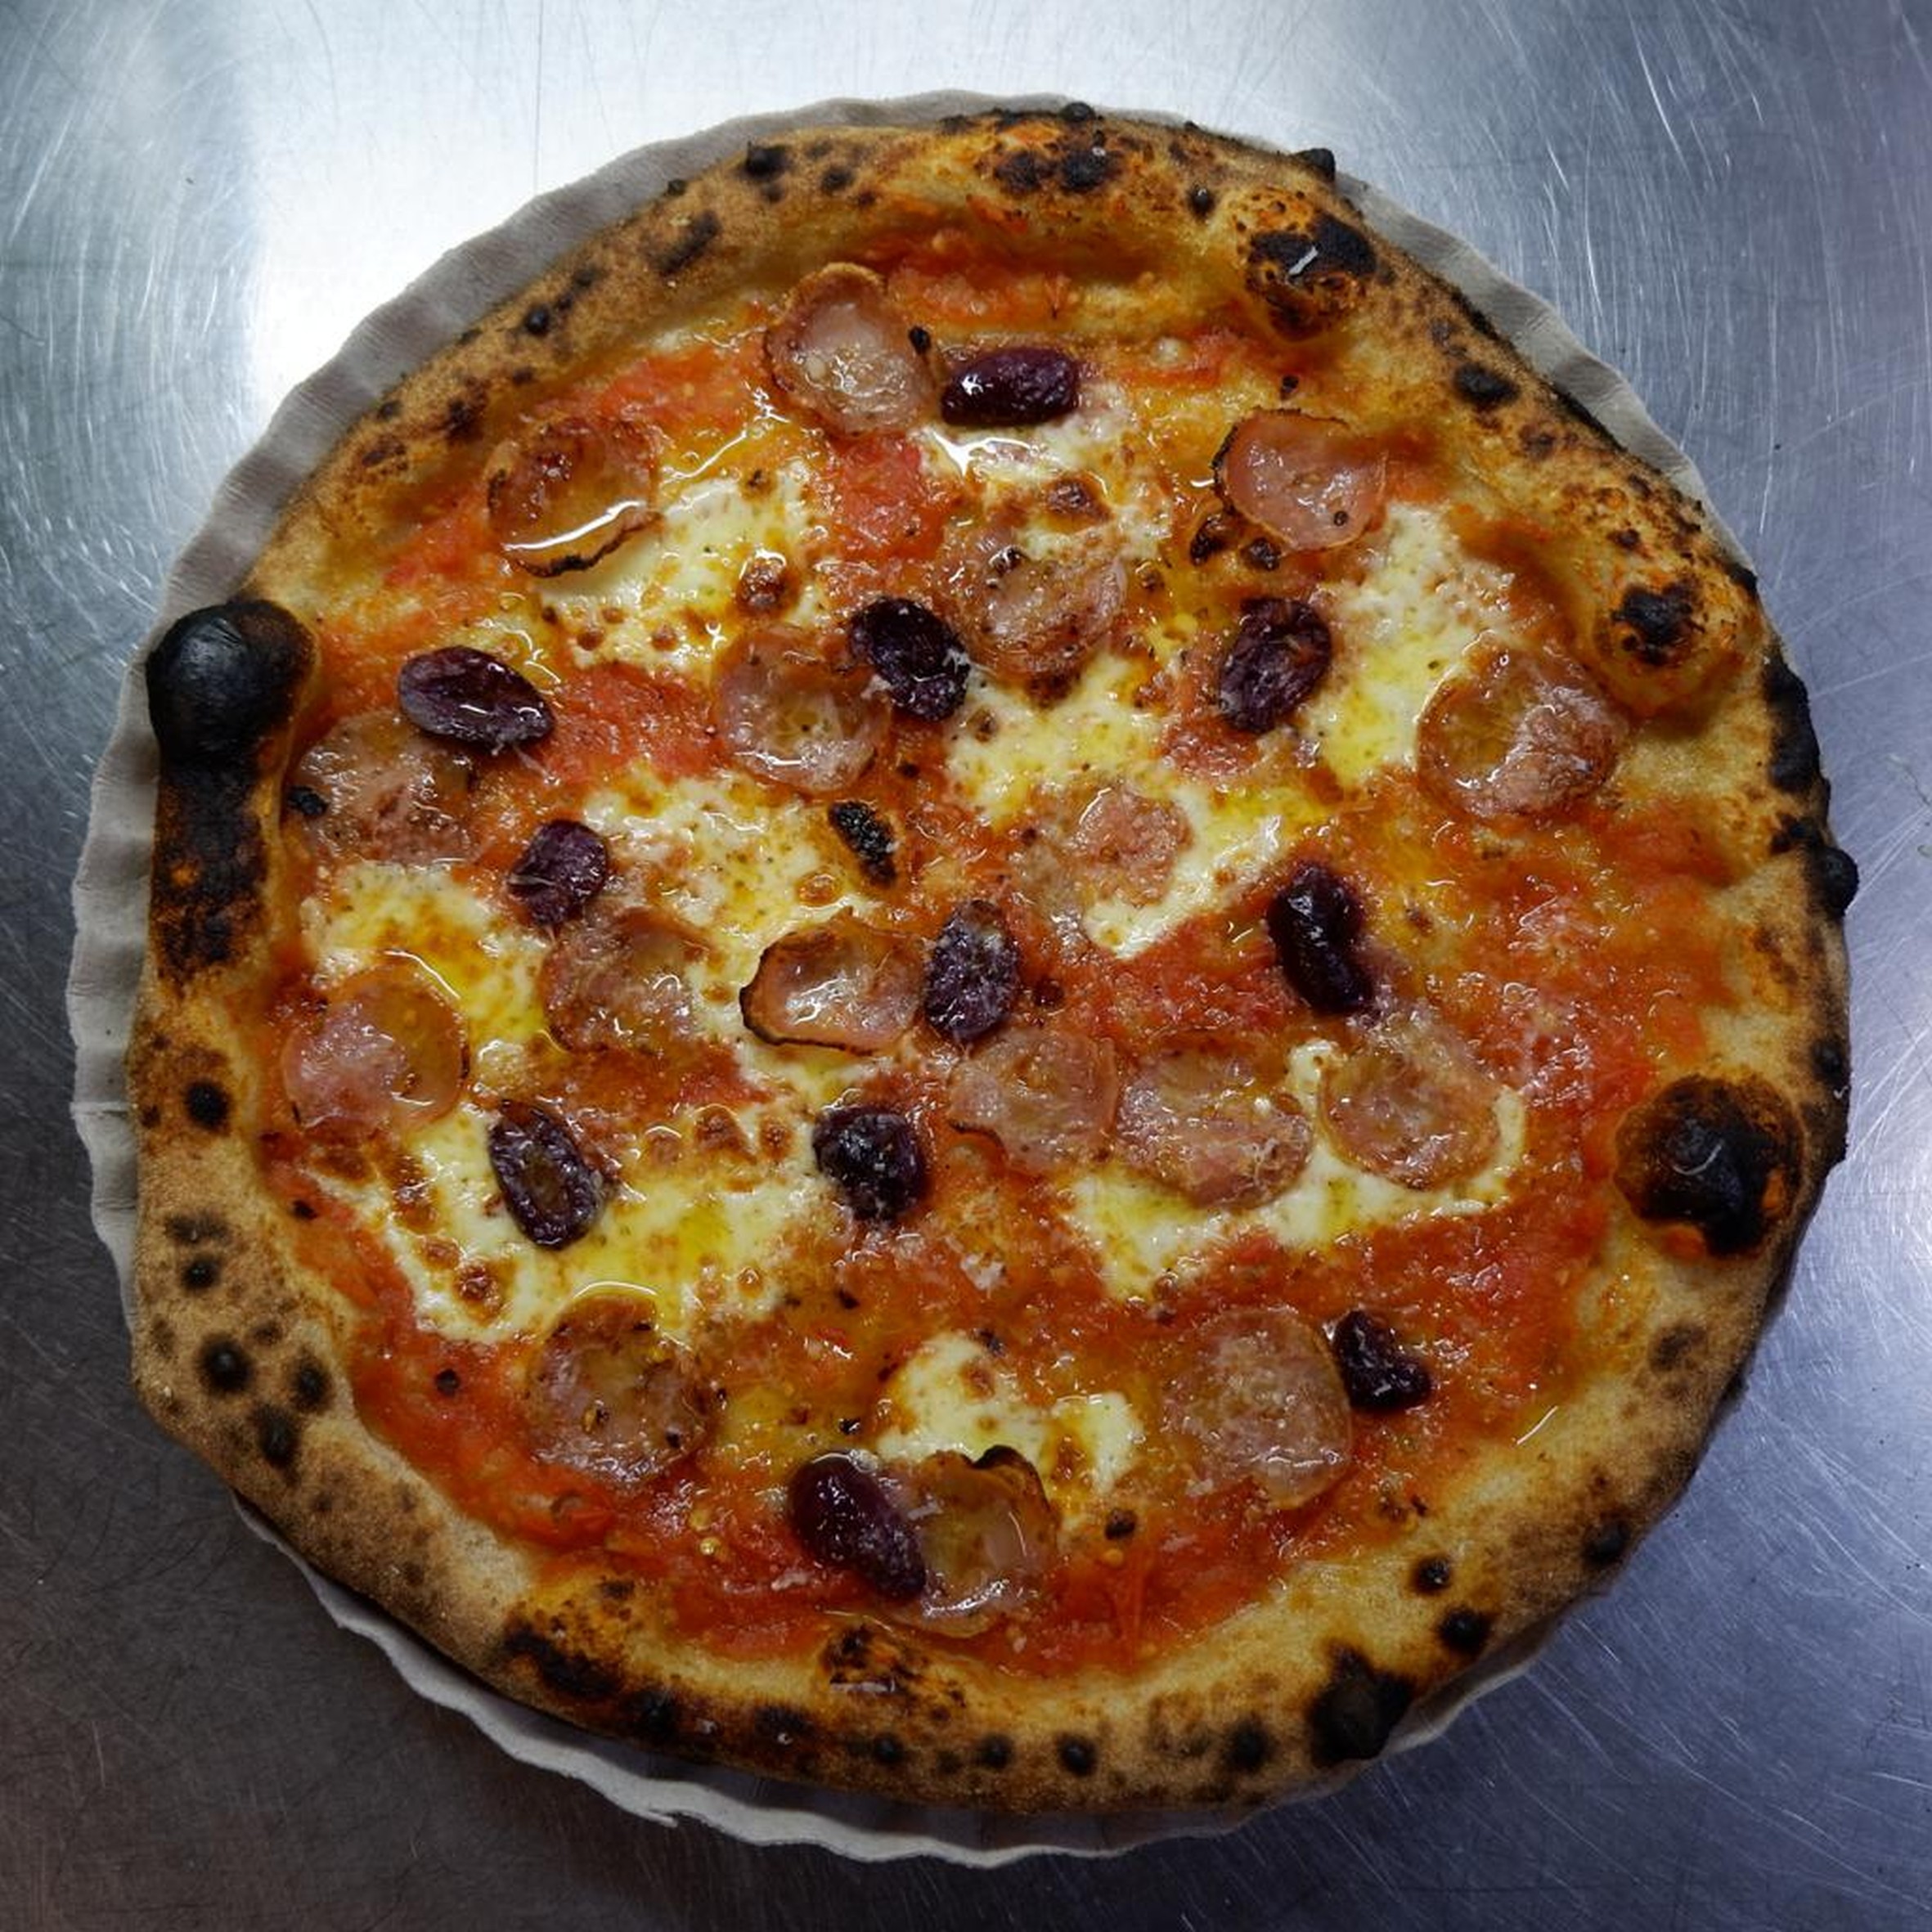 Oito sabores de pizza no estilo napolitano, com massa artesanal e valorizando ingredientes orgânicos, poderão ser saboreados das 12h às 18h 